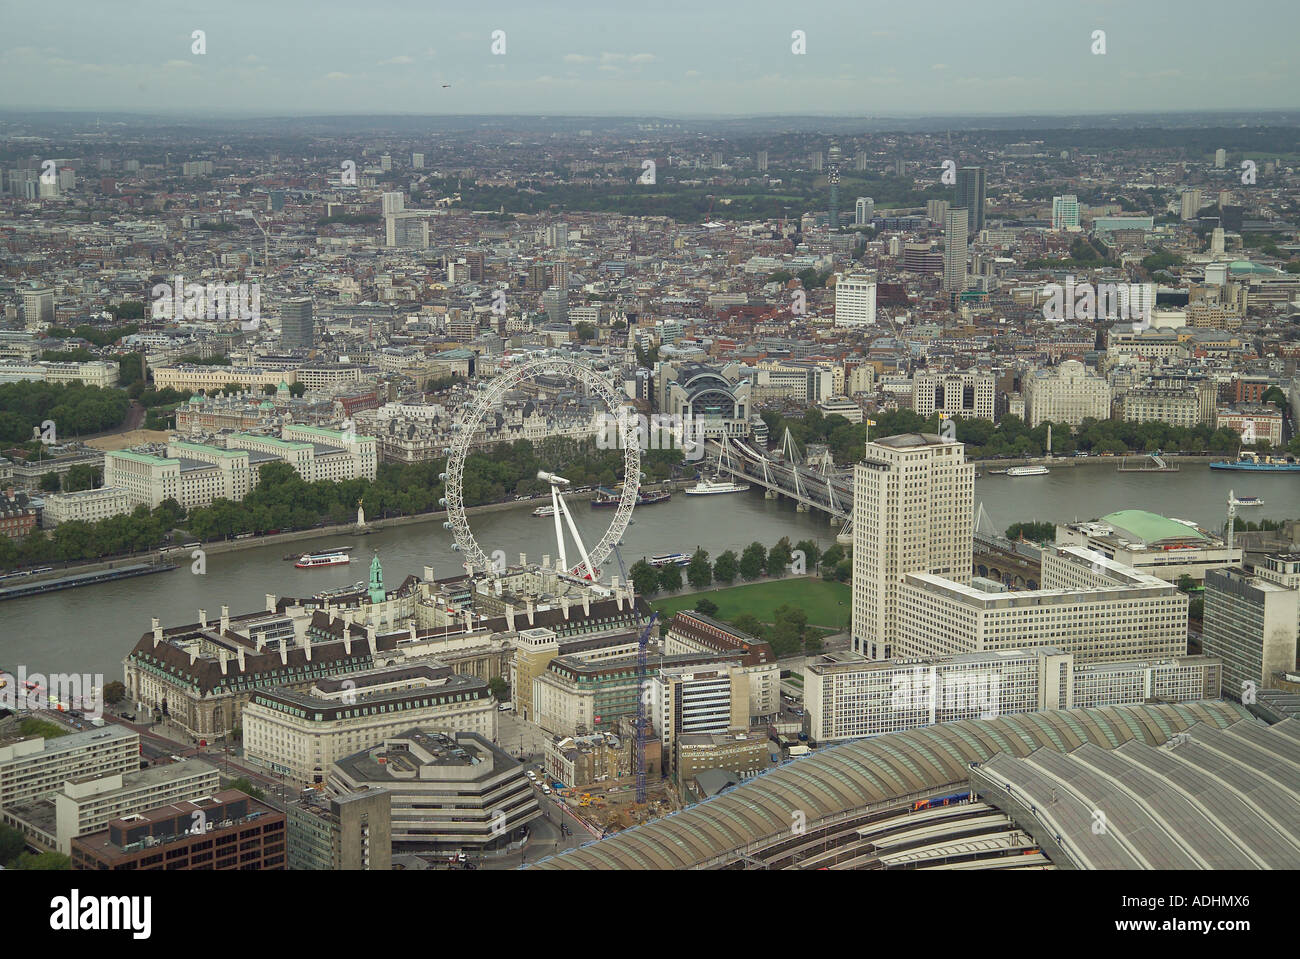 Luftaufnahme des London Eye und County Hall mit Blick auf die Themse, Charing Cross Station und Whitehall in London Stockfoto